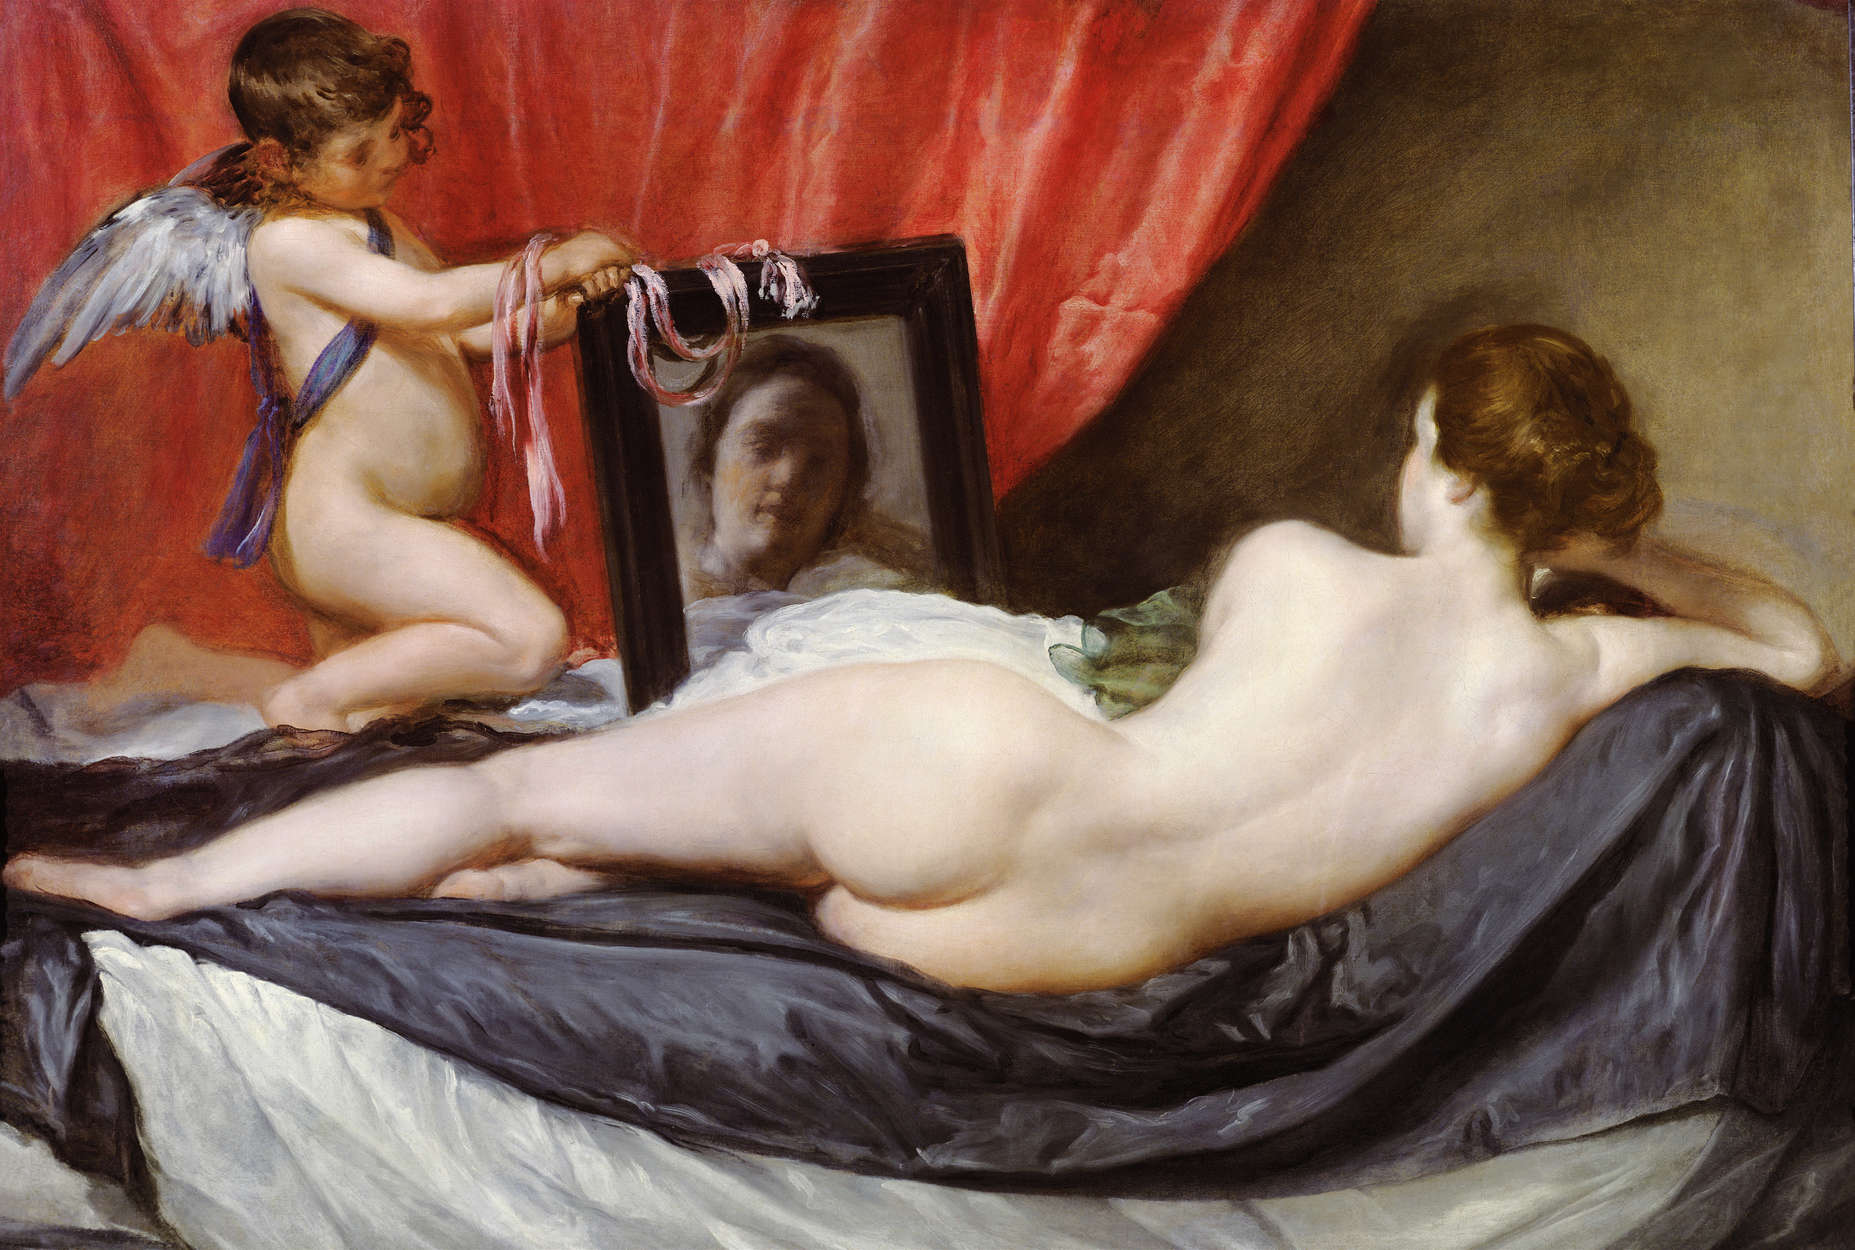             Mural "Venus ante el espejo" de Diego Velázquez
        